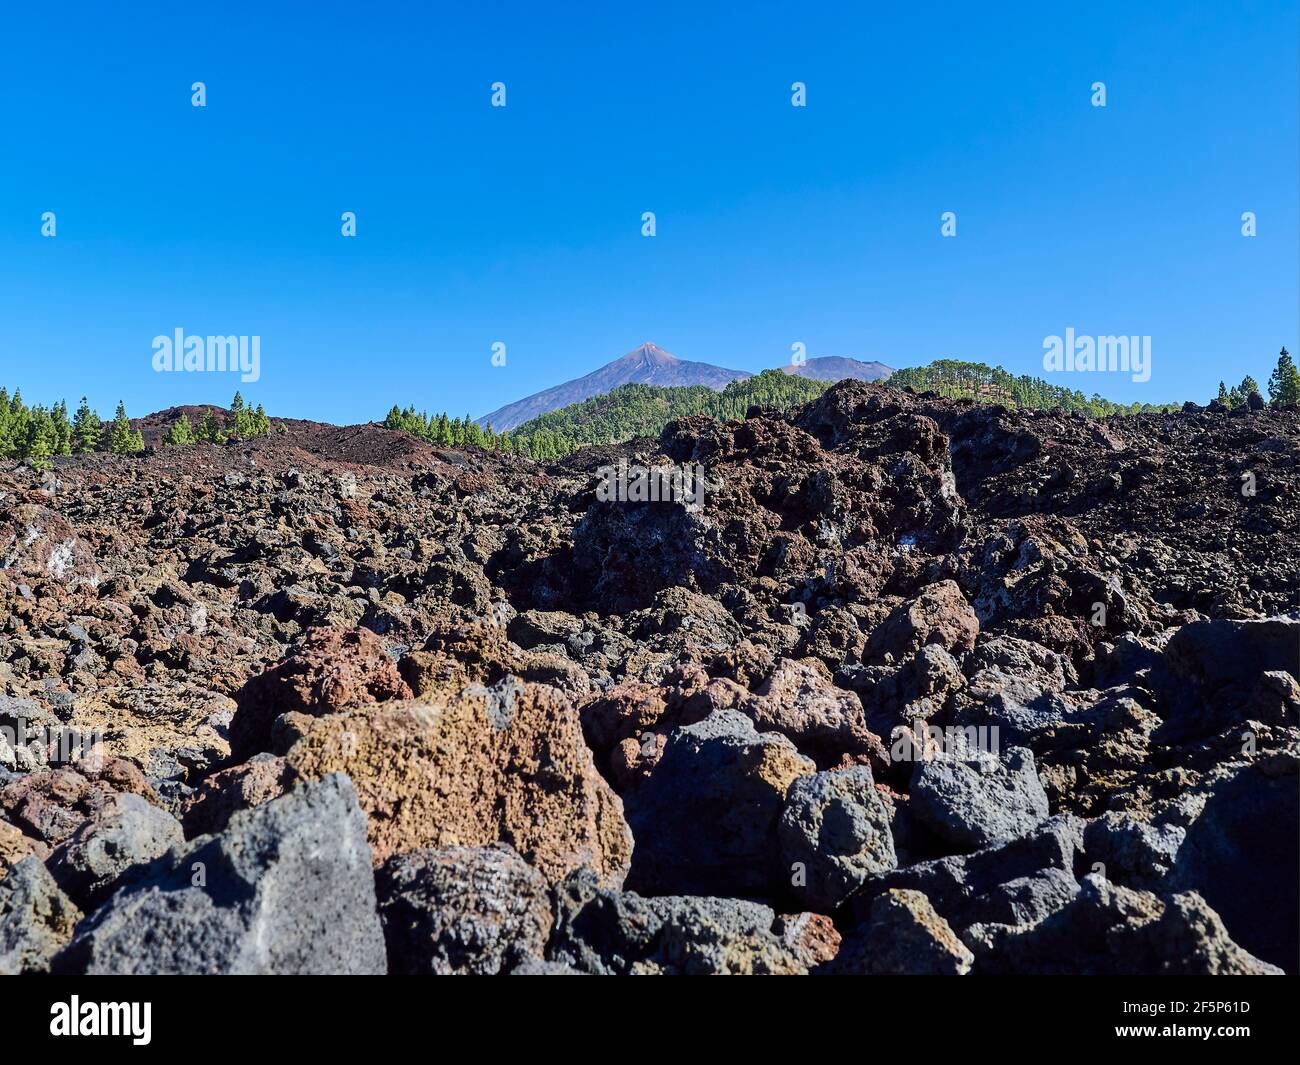 El Teide est un volcan et le plus haut sommet de l'île de tenerife, en Espagne. Une destination de voyage populaire pour la randonnée et le trekking. Banque D'Images